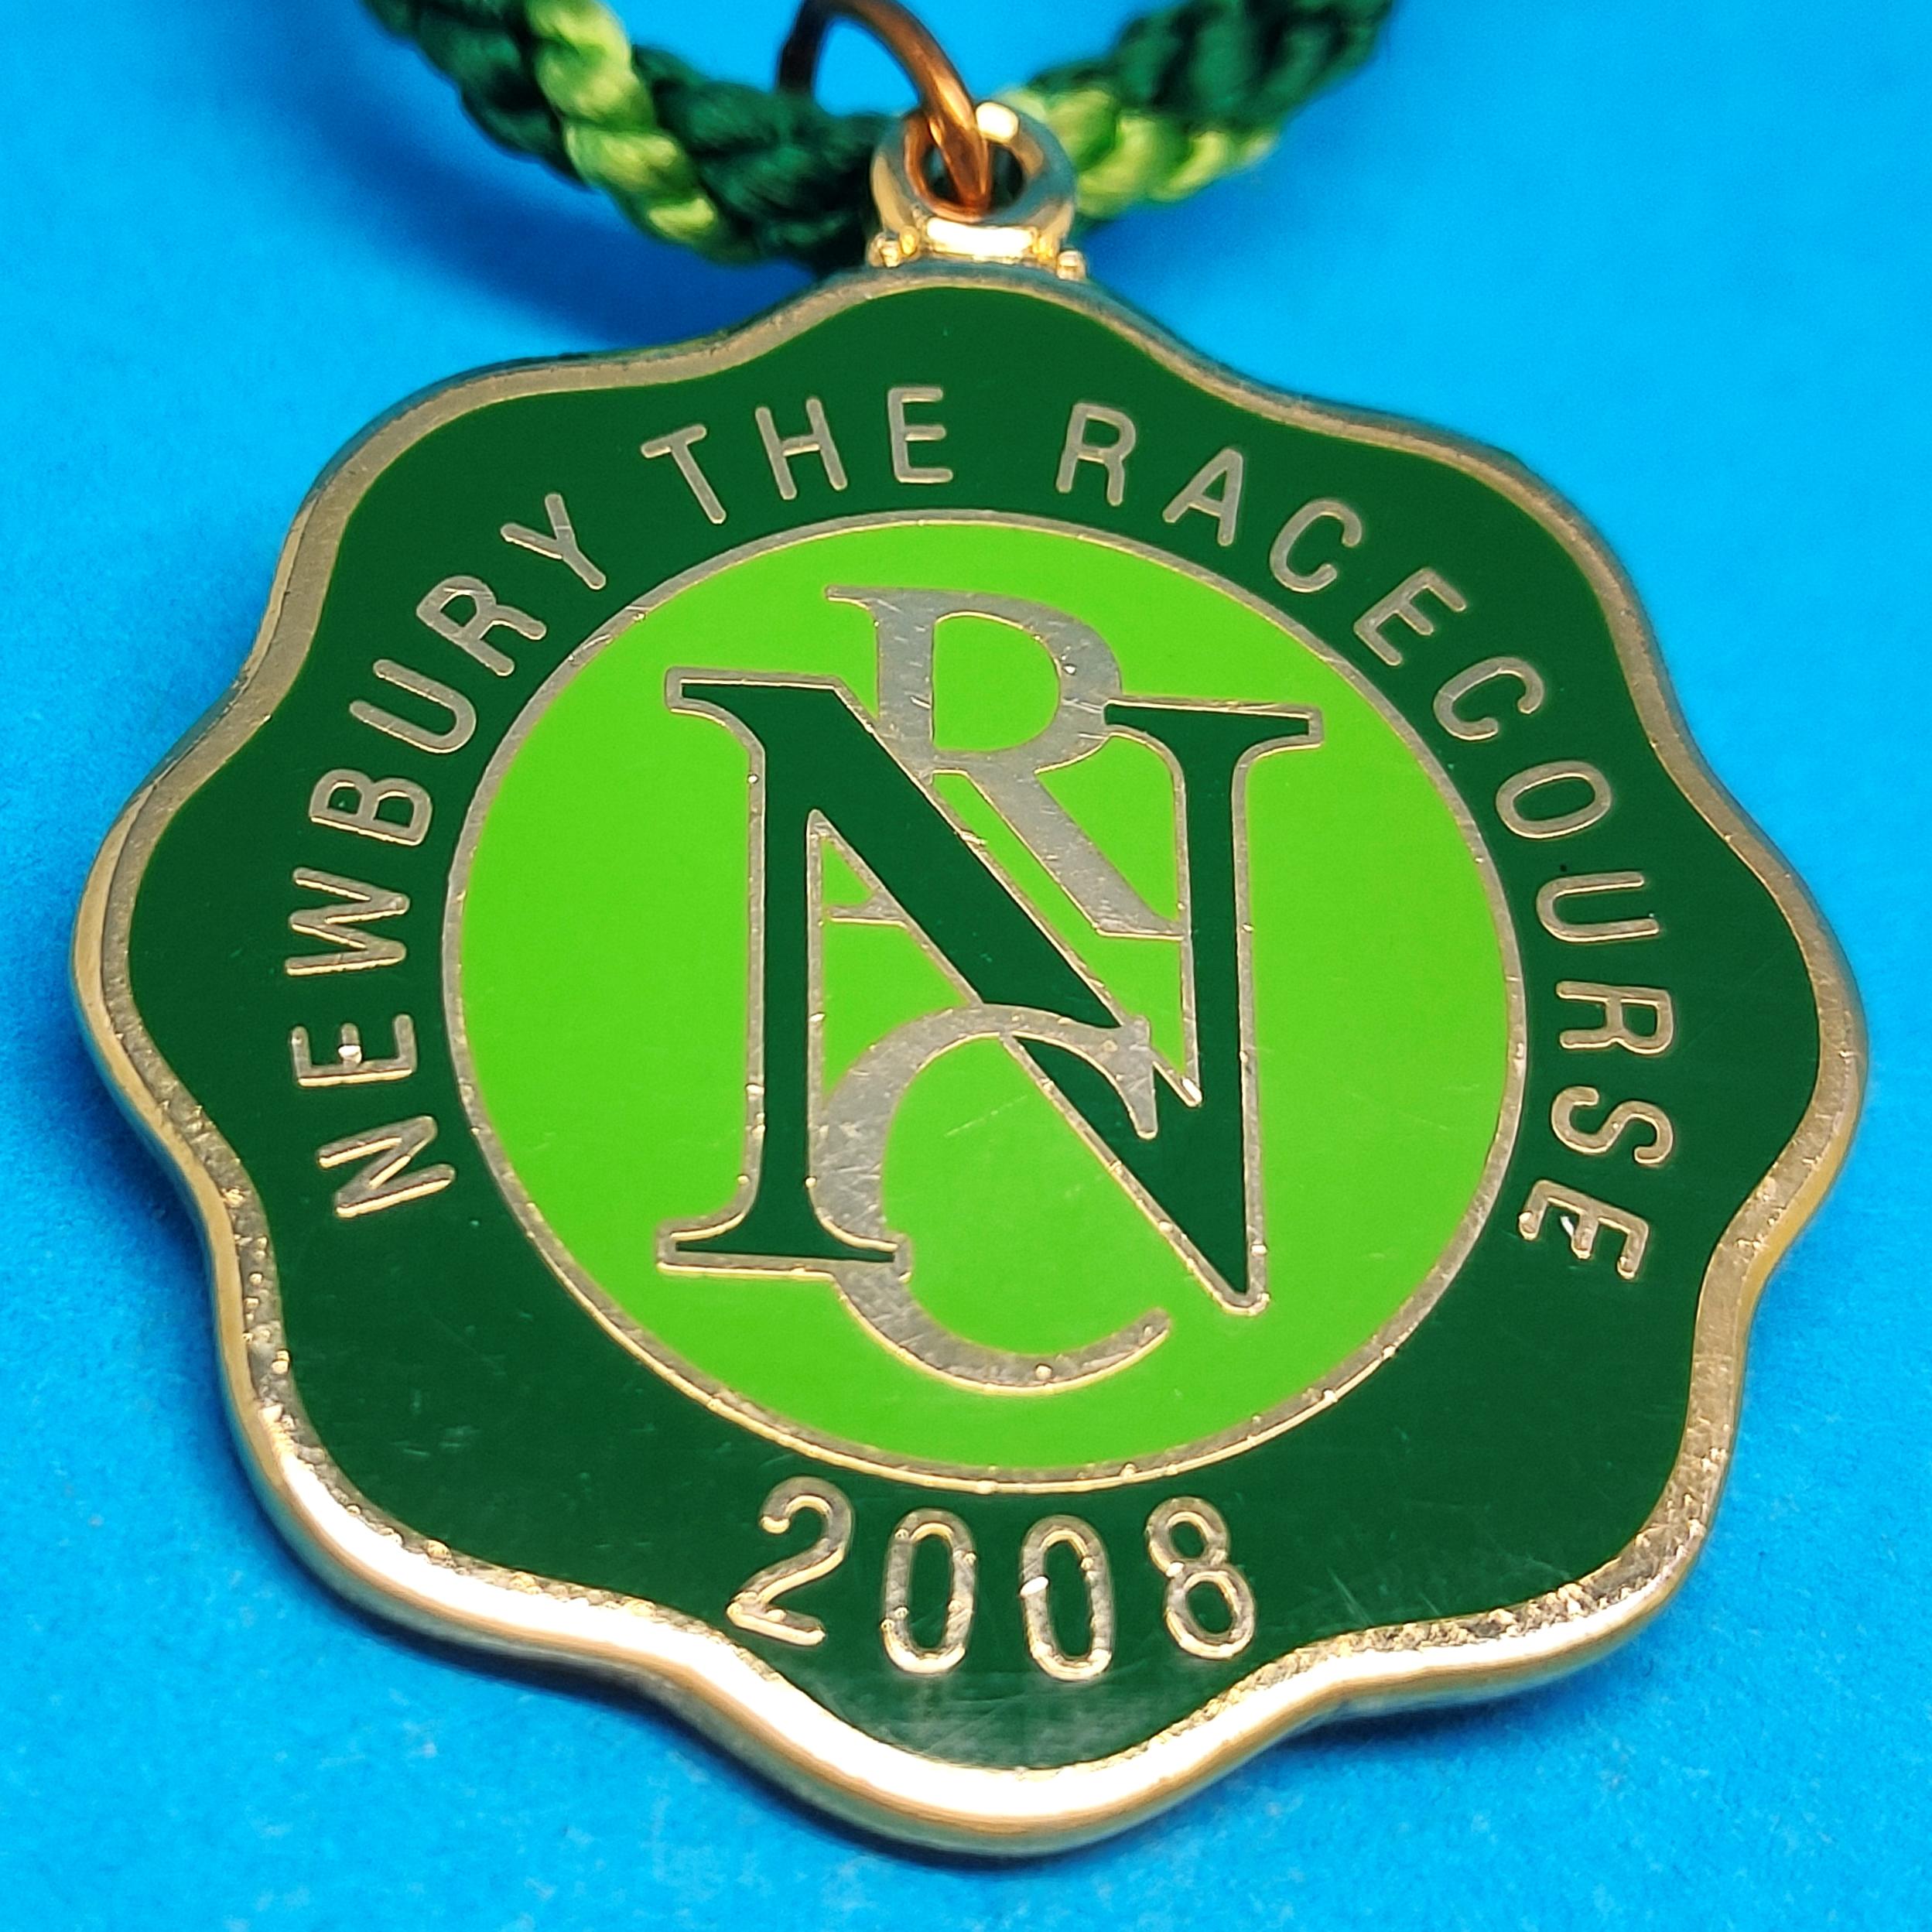 Newbury 2008